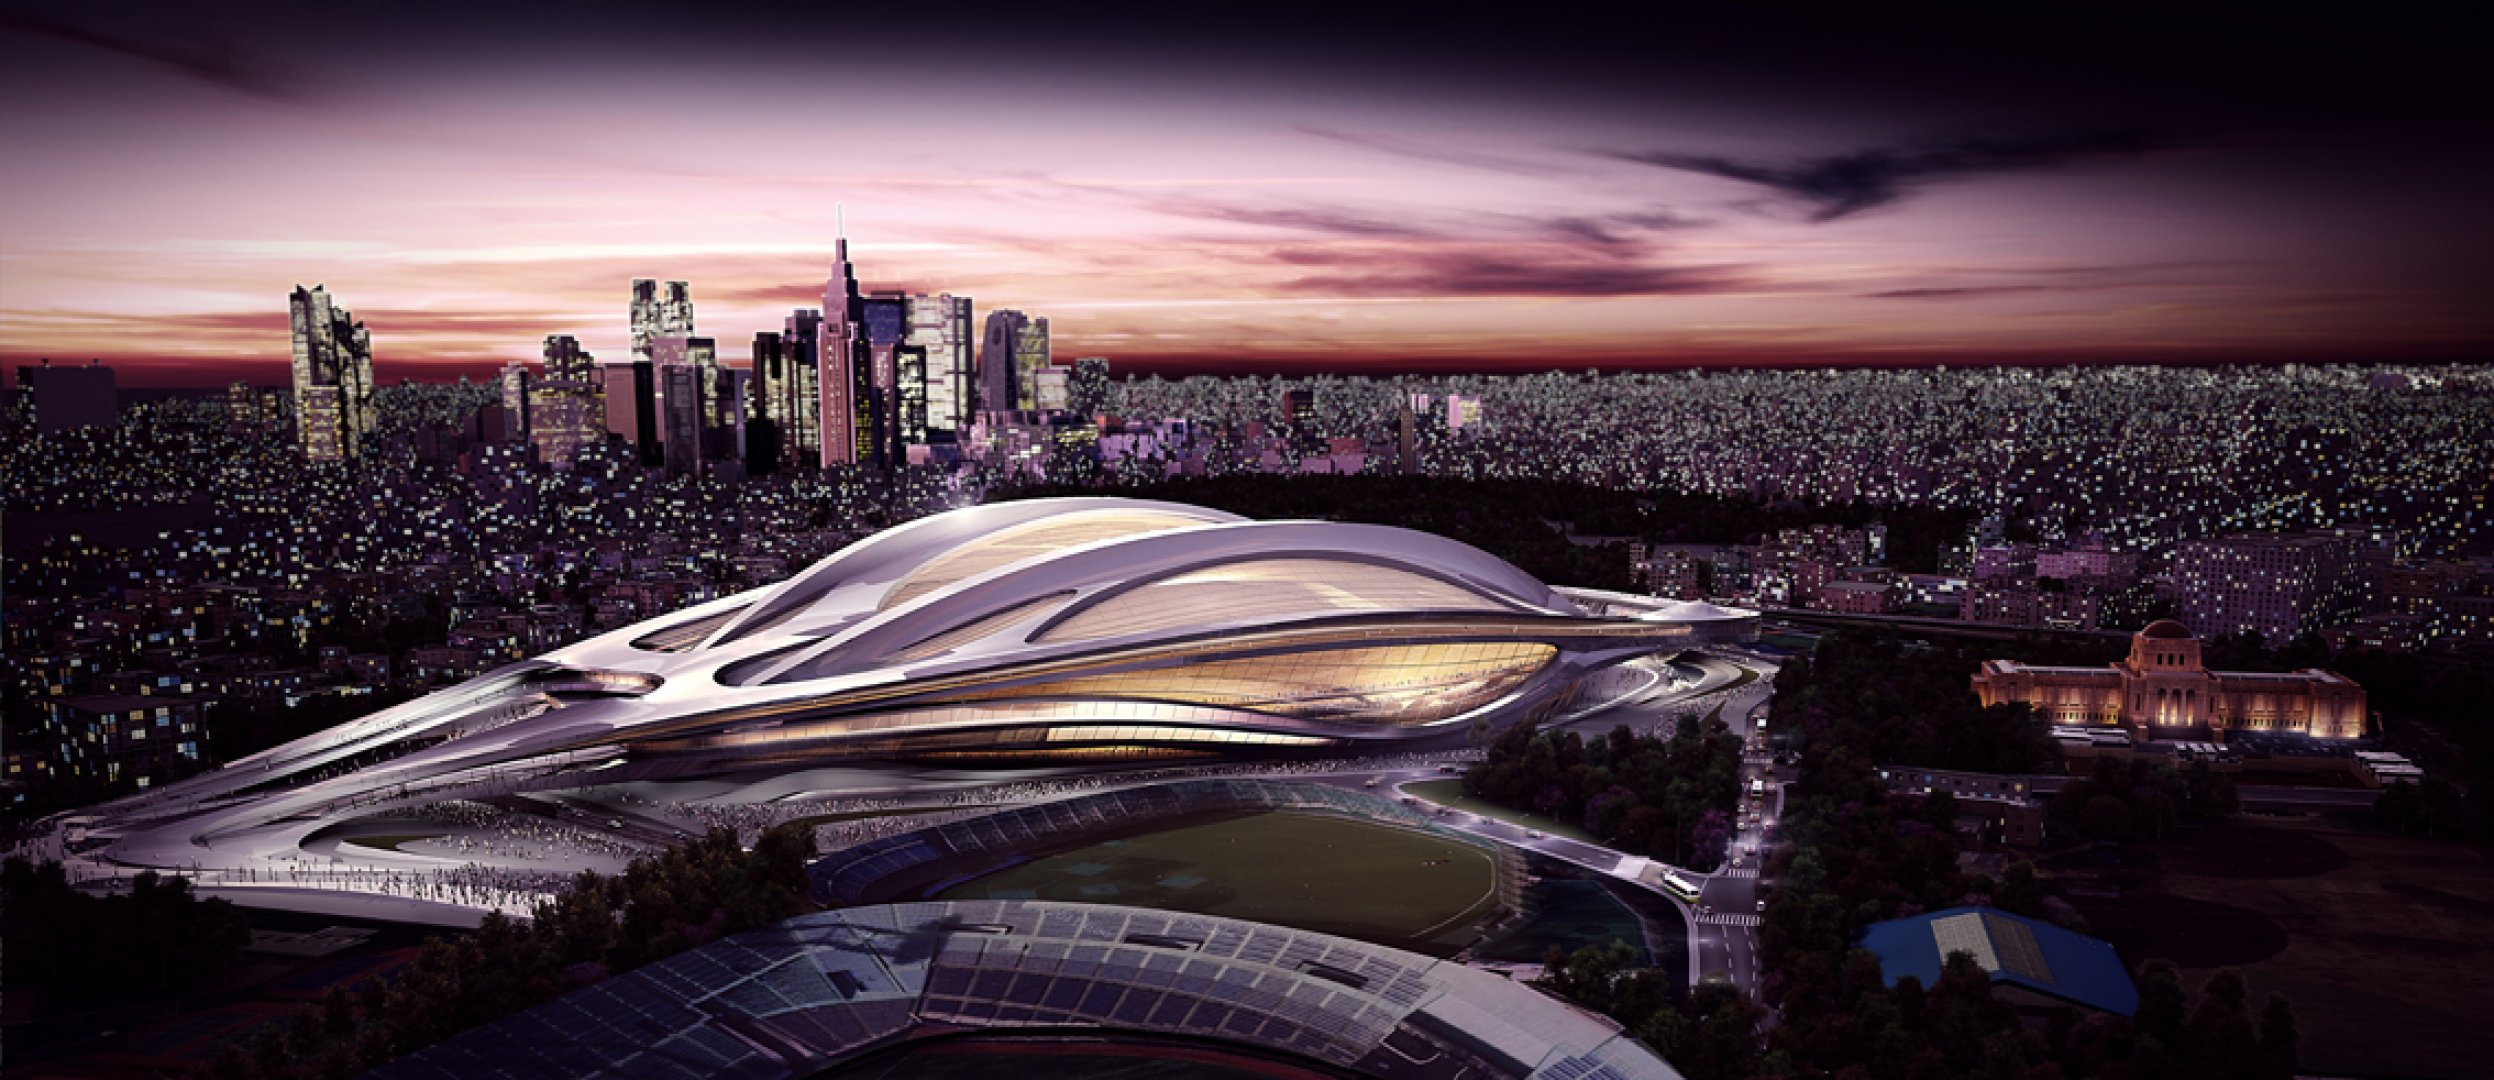 Zaha Hadid incassa le critiche e modifica lo stadio olimpico per Tokyo 2020